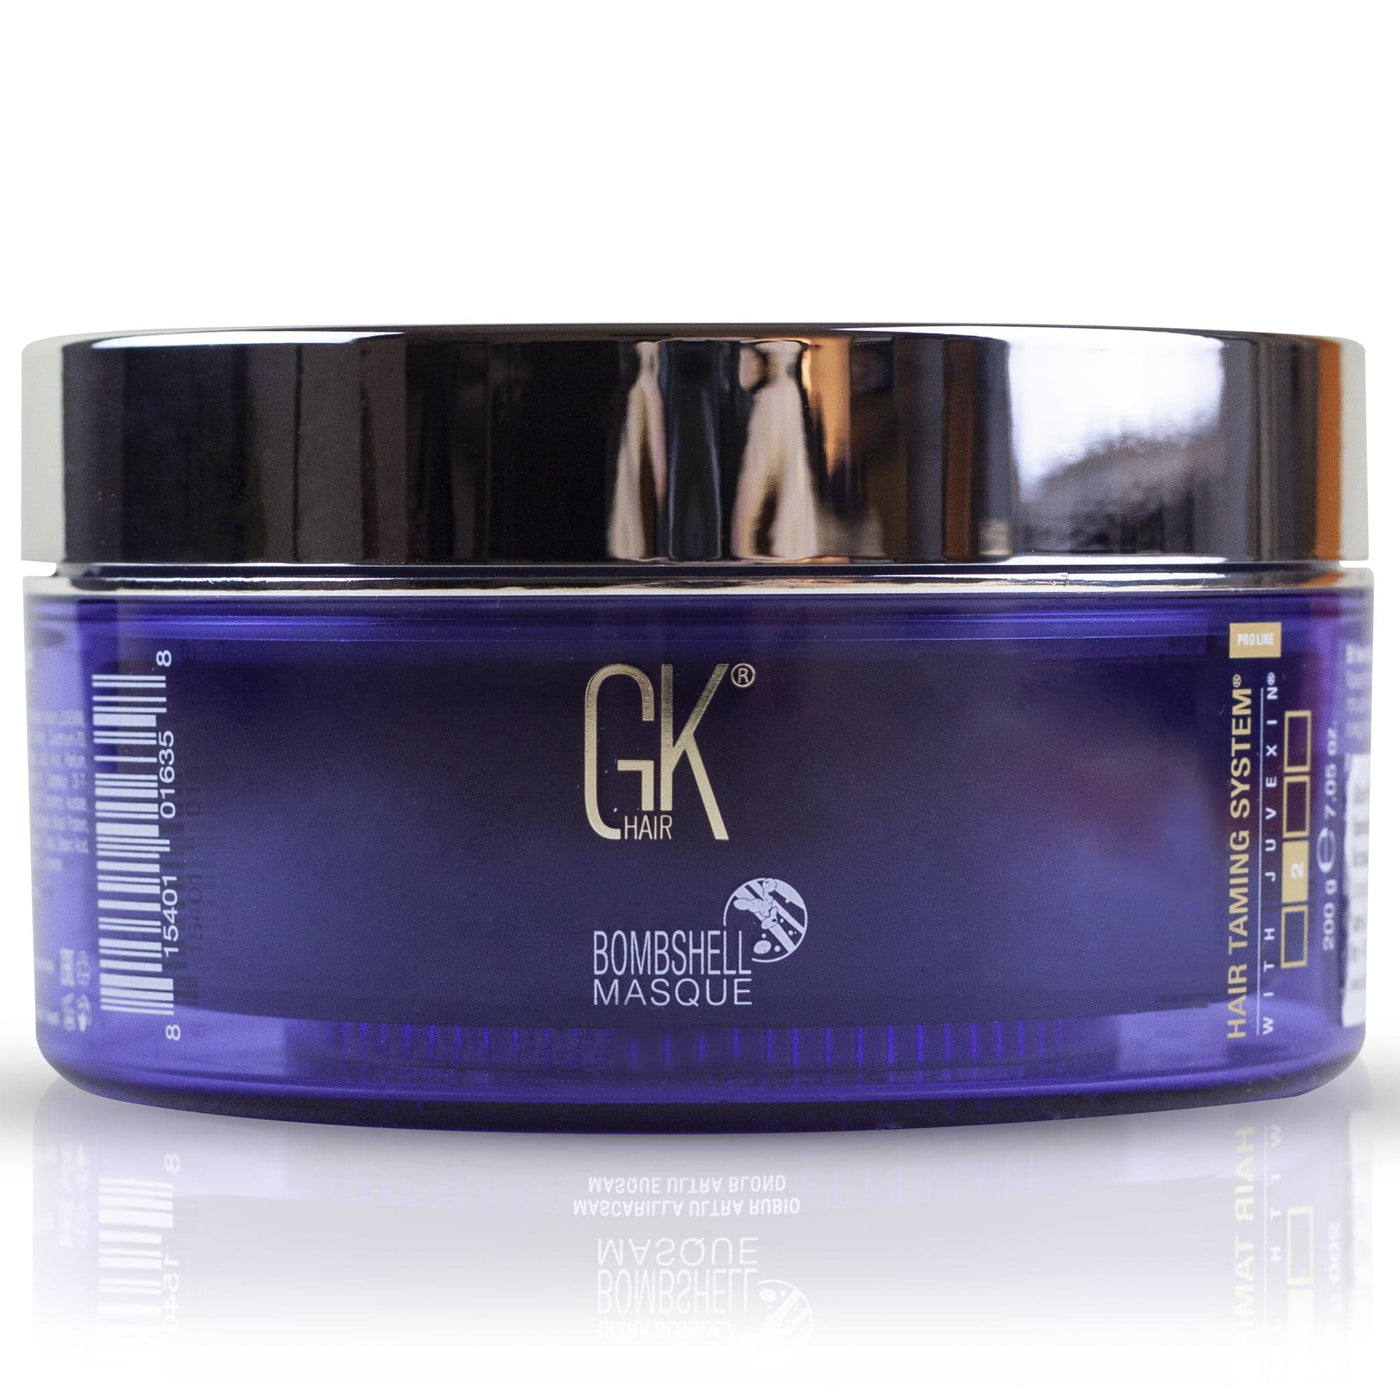 Lavender Bombshell Masque | GK Hair Bombshell Masque